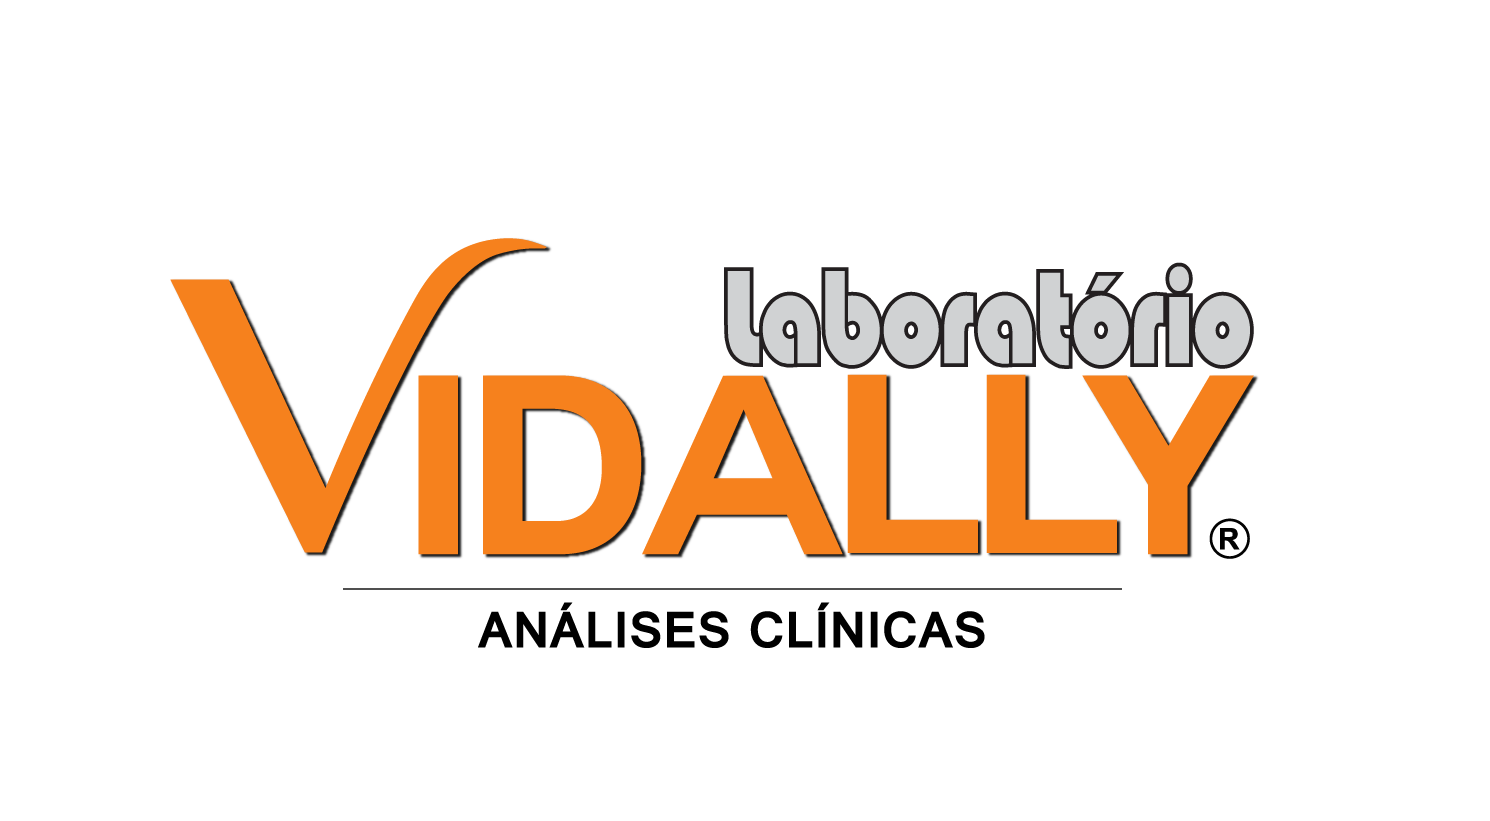 O Laboratório Vidally